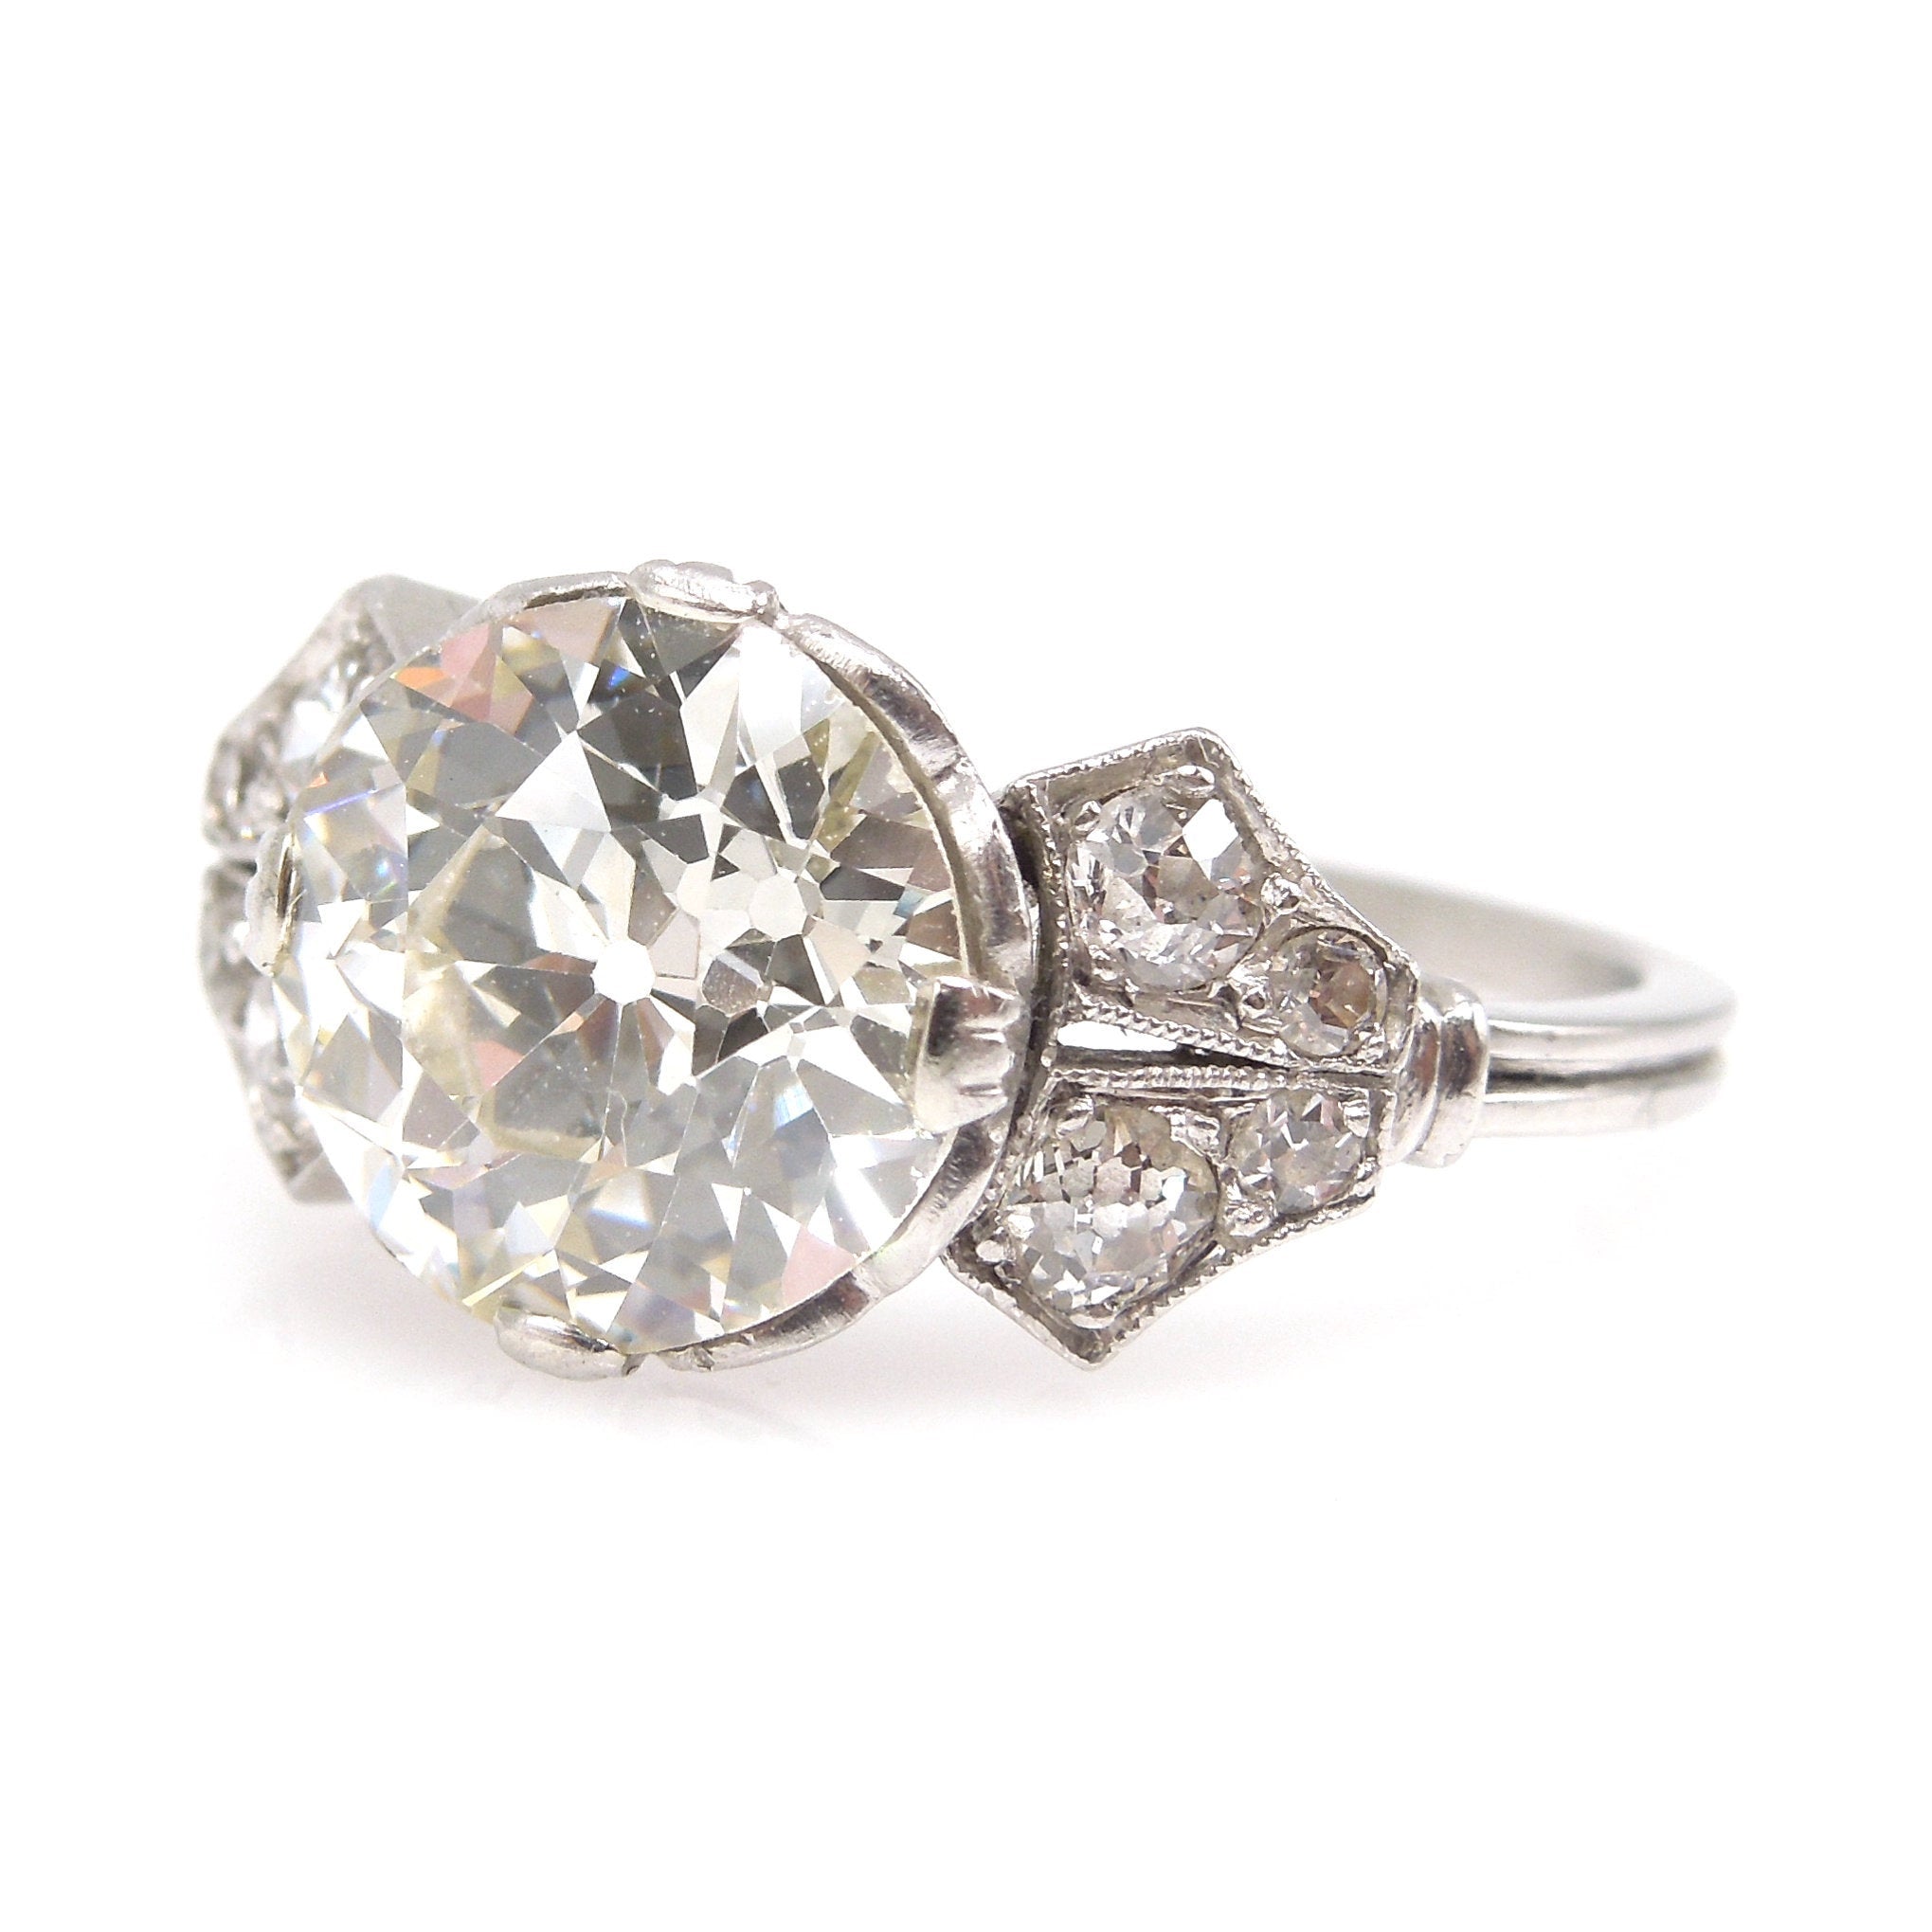 2.19 carat GIA Old European Cut Edwardian Diamond Engagement Ring in Platinum